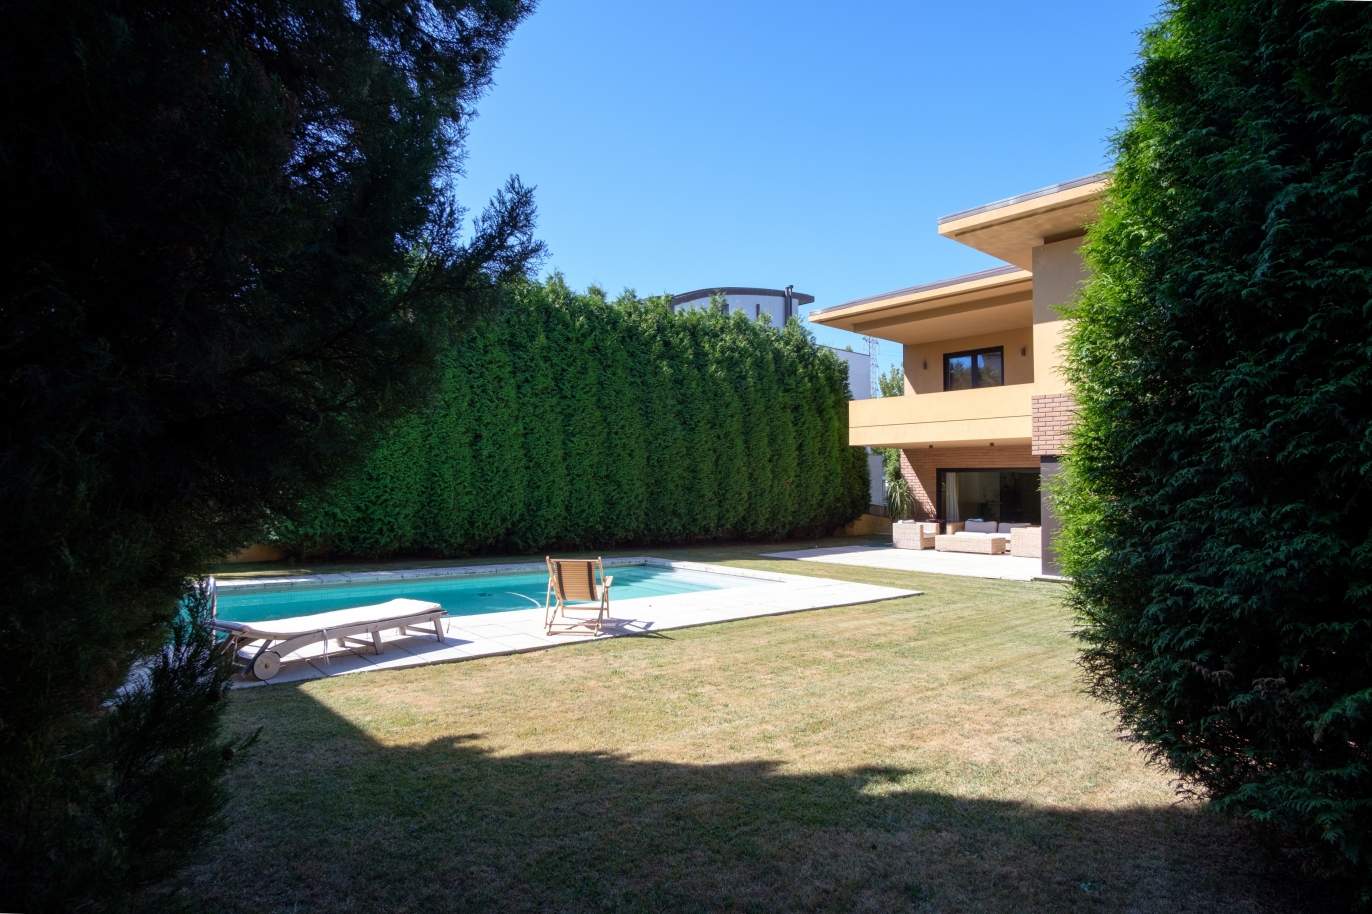 Venta de villa de 4 frentes con piscina y jardín, S. Mamede Infesta_118961